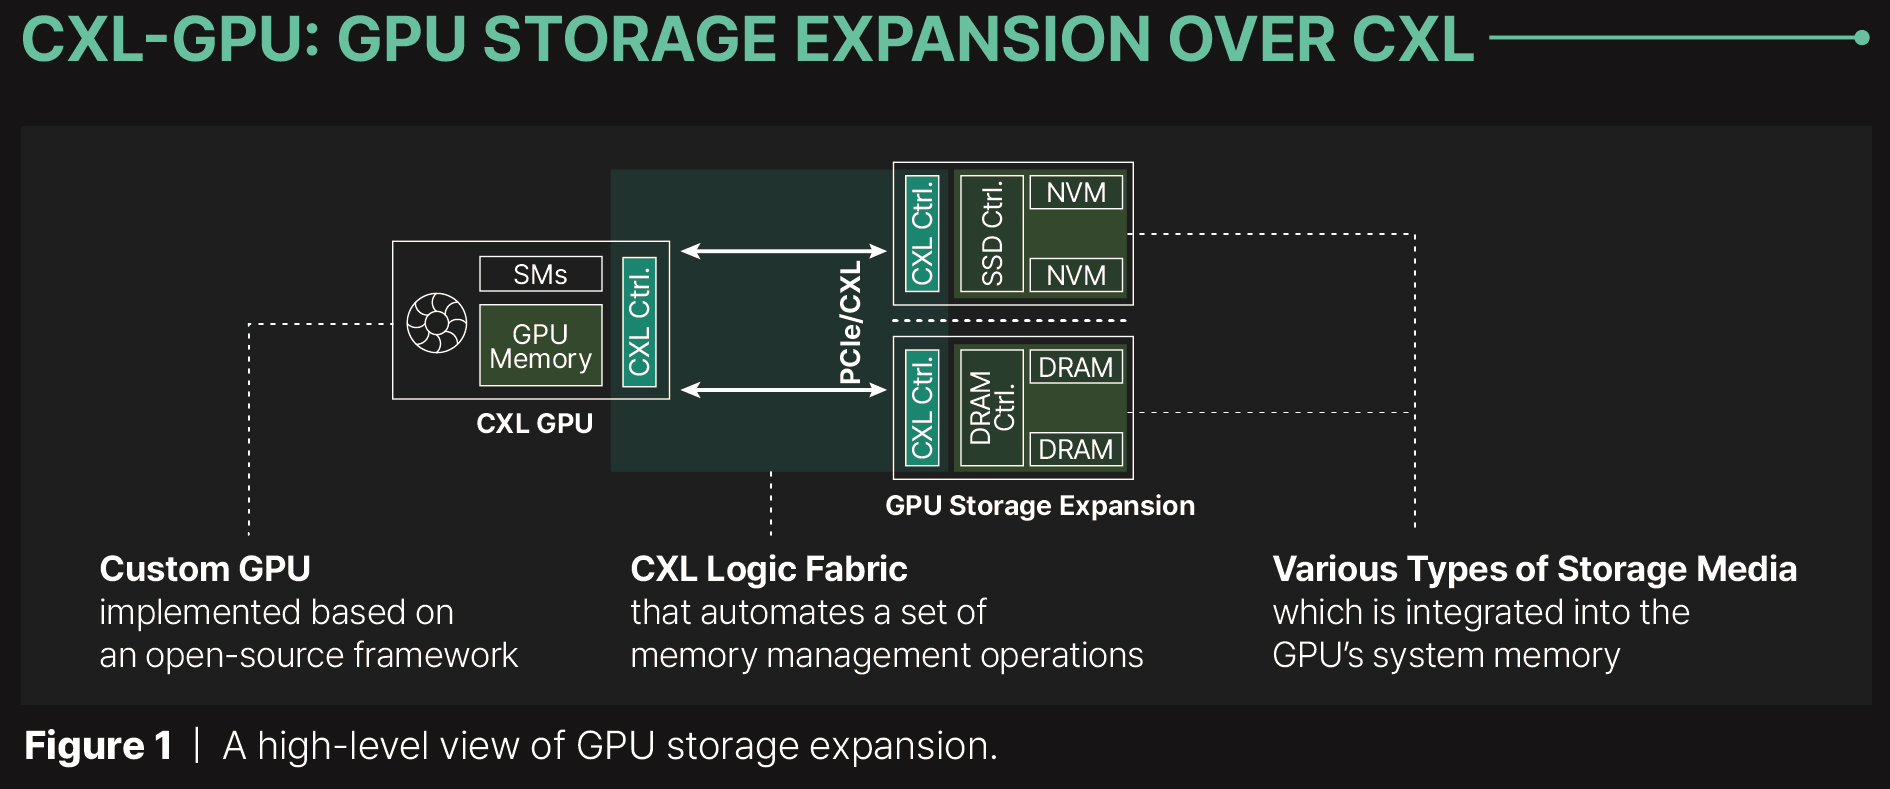 GPU storage expansion using CXL.